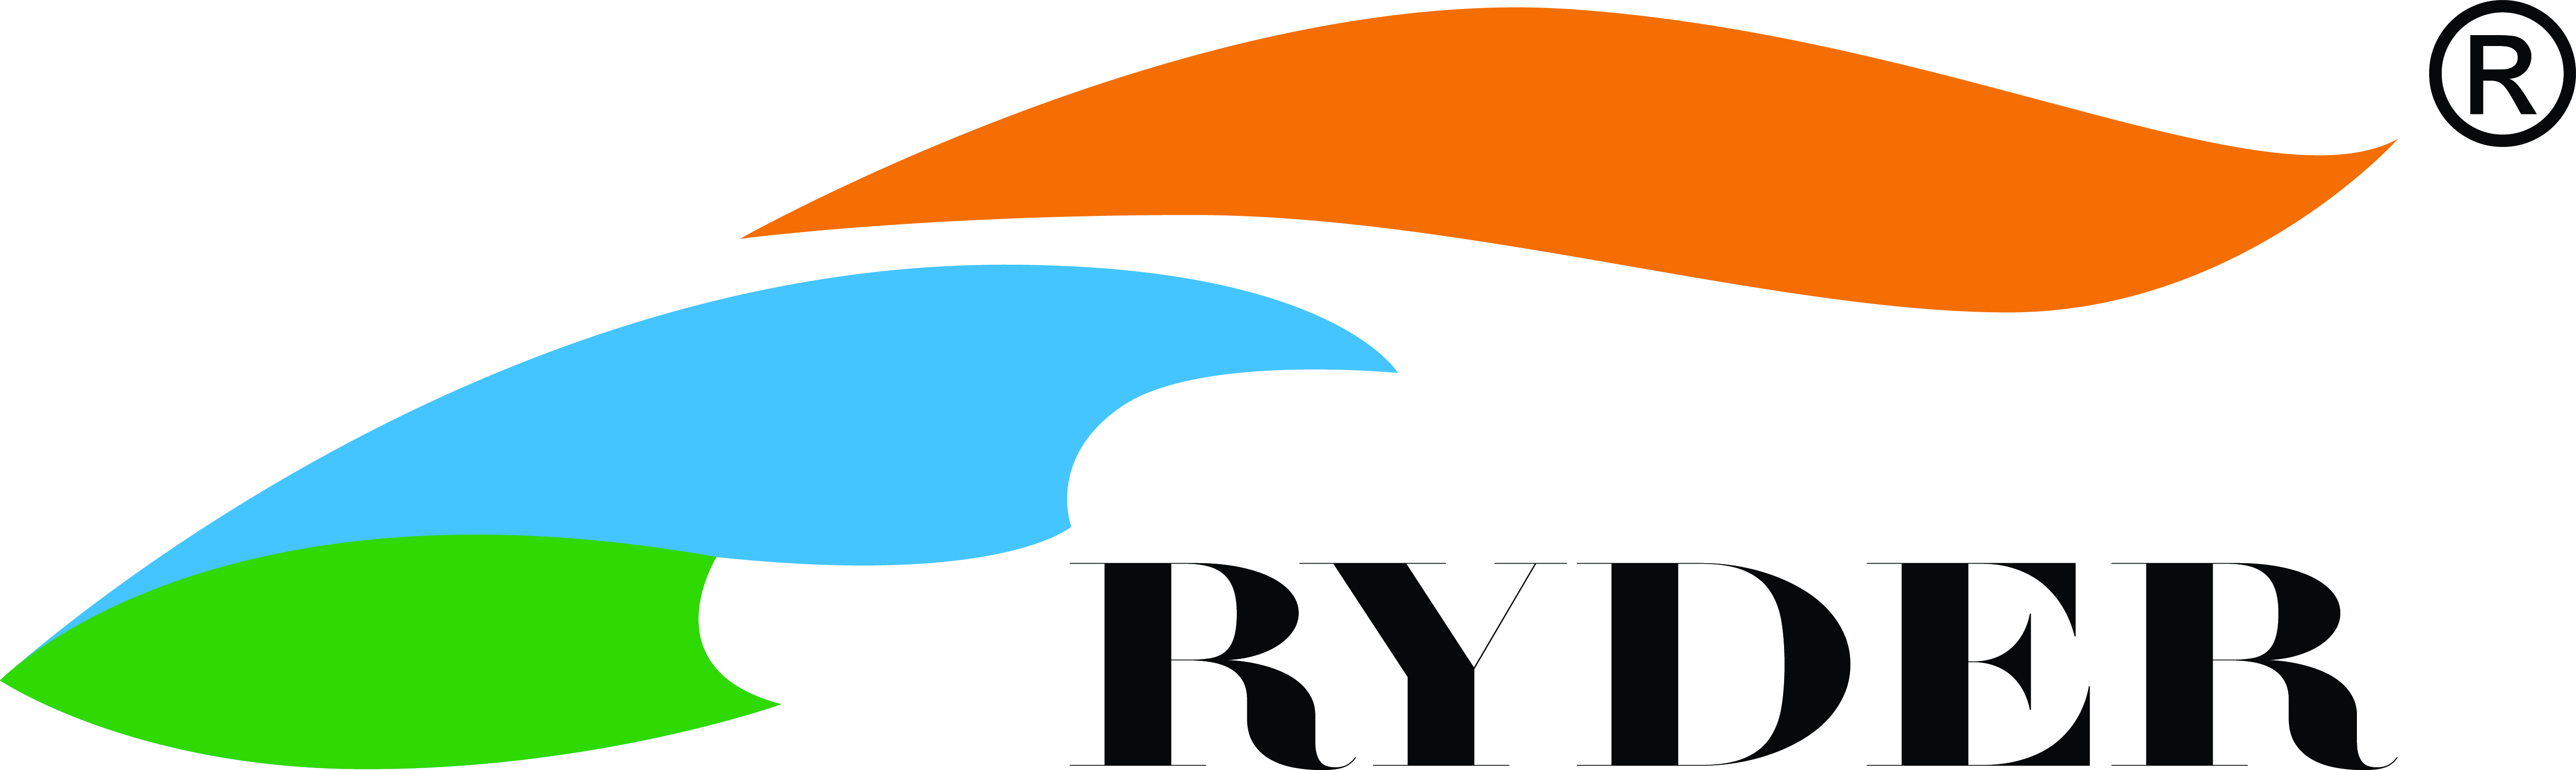 Túi khô chống nước 5L Ryder PVC Tarpaulin Dry Bag C1001 - 6667